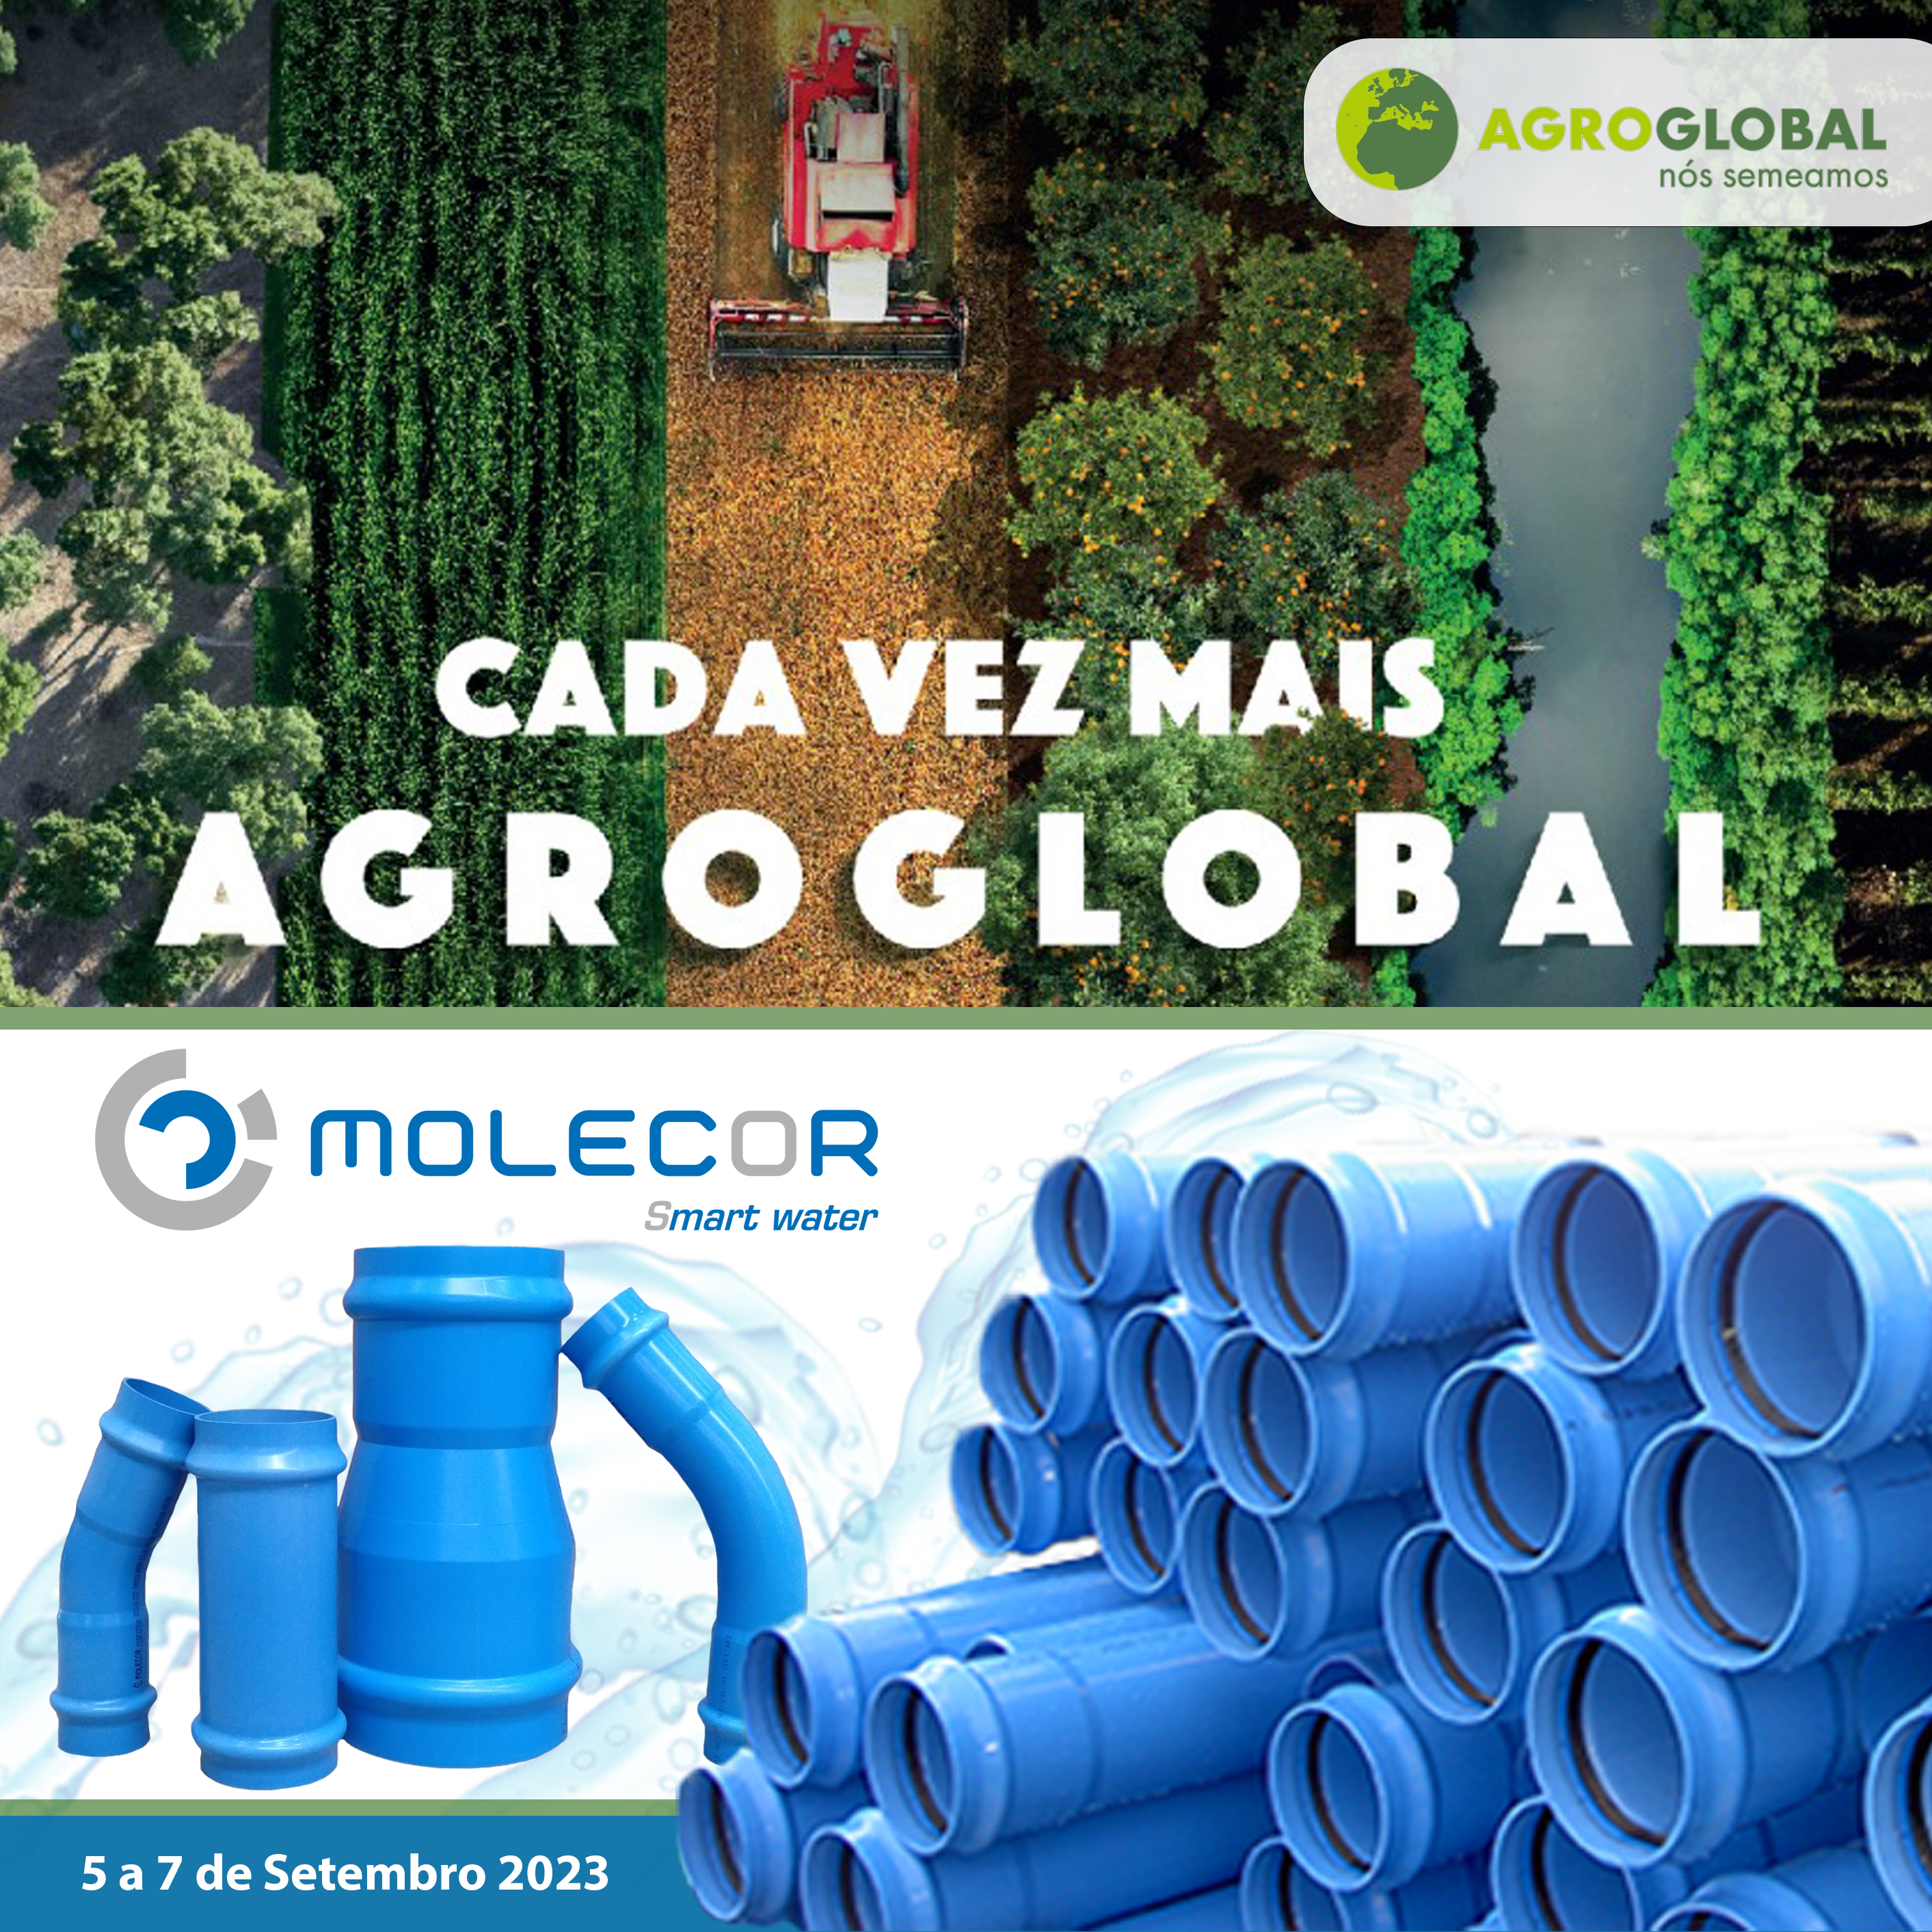 A Molecor mostrará todas as vantagens das suas tubagens e acessórios, TOM® e ecoFITTOM®, para redes de irrigação na Agroglobal 2023